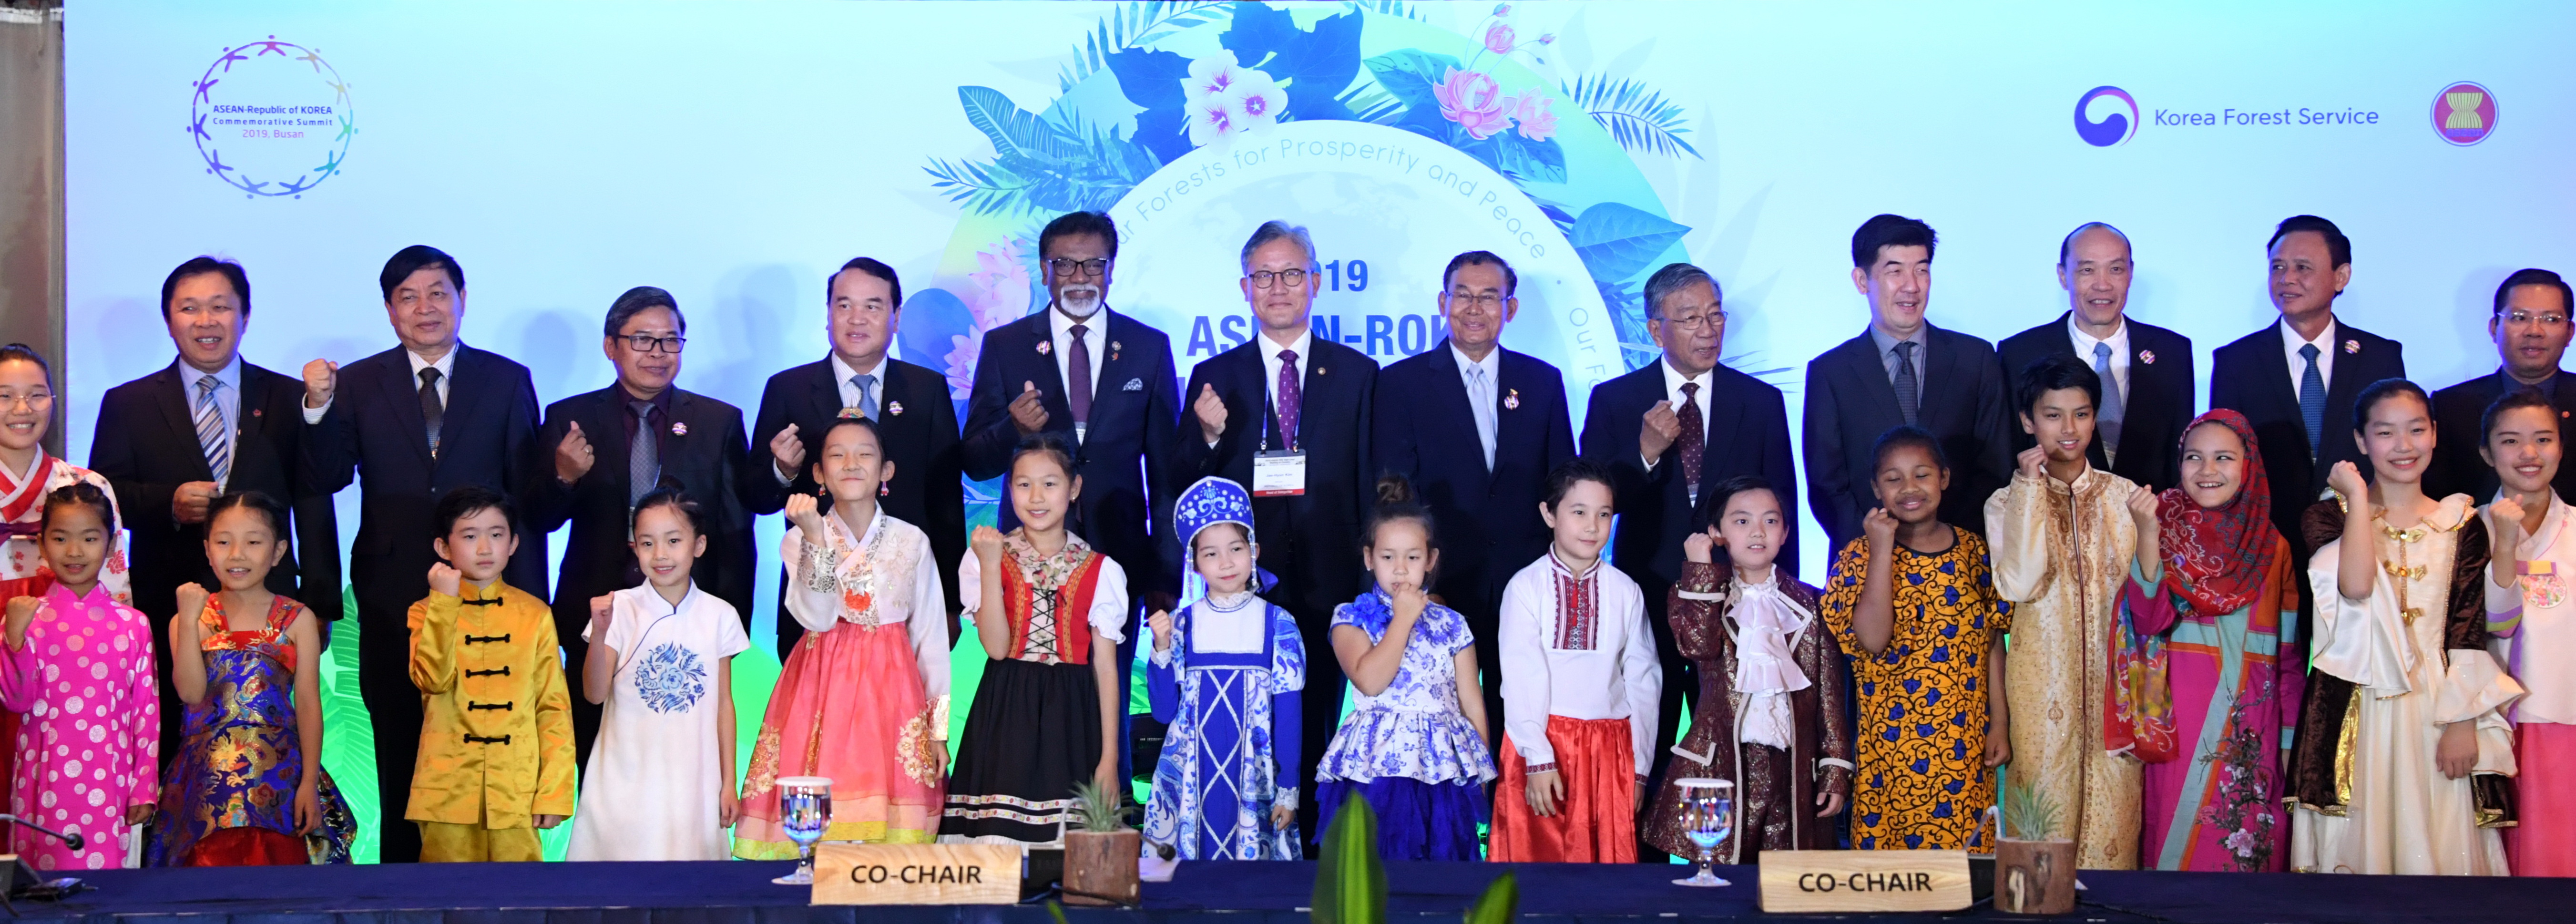 산림청, 2019 한-아세안 산림최고위급 회의 개최